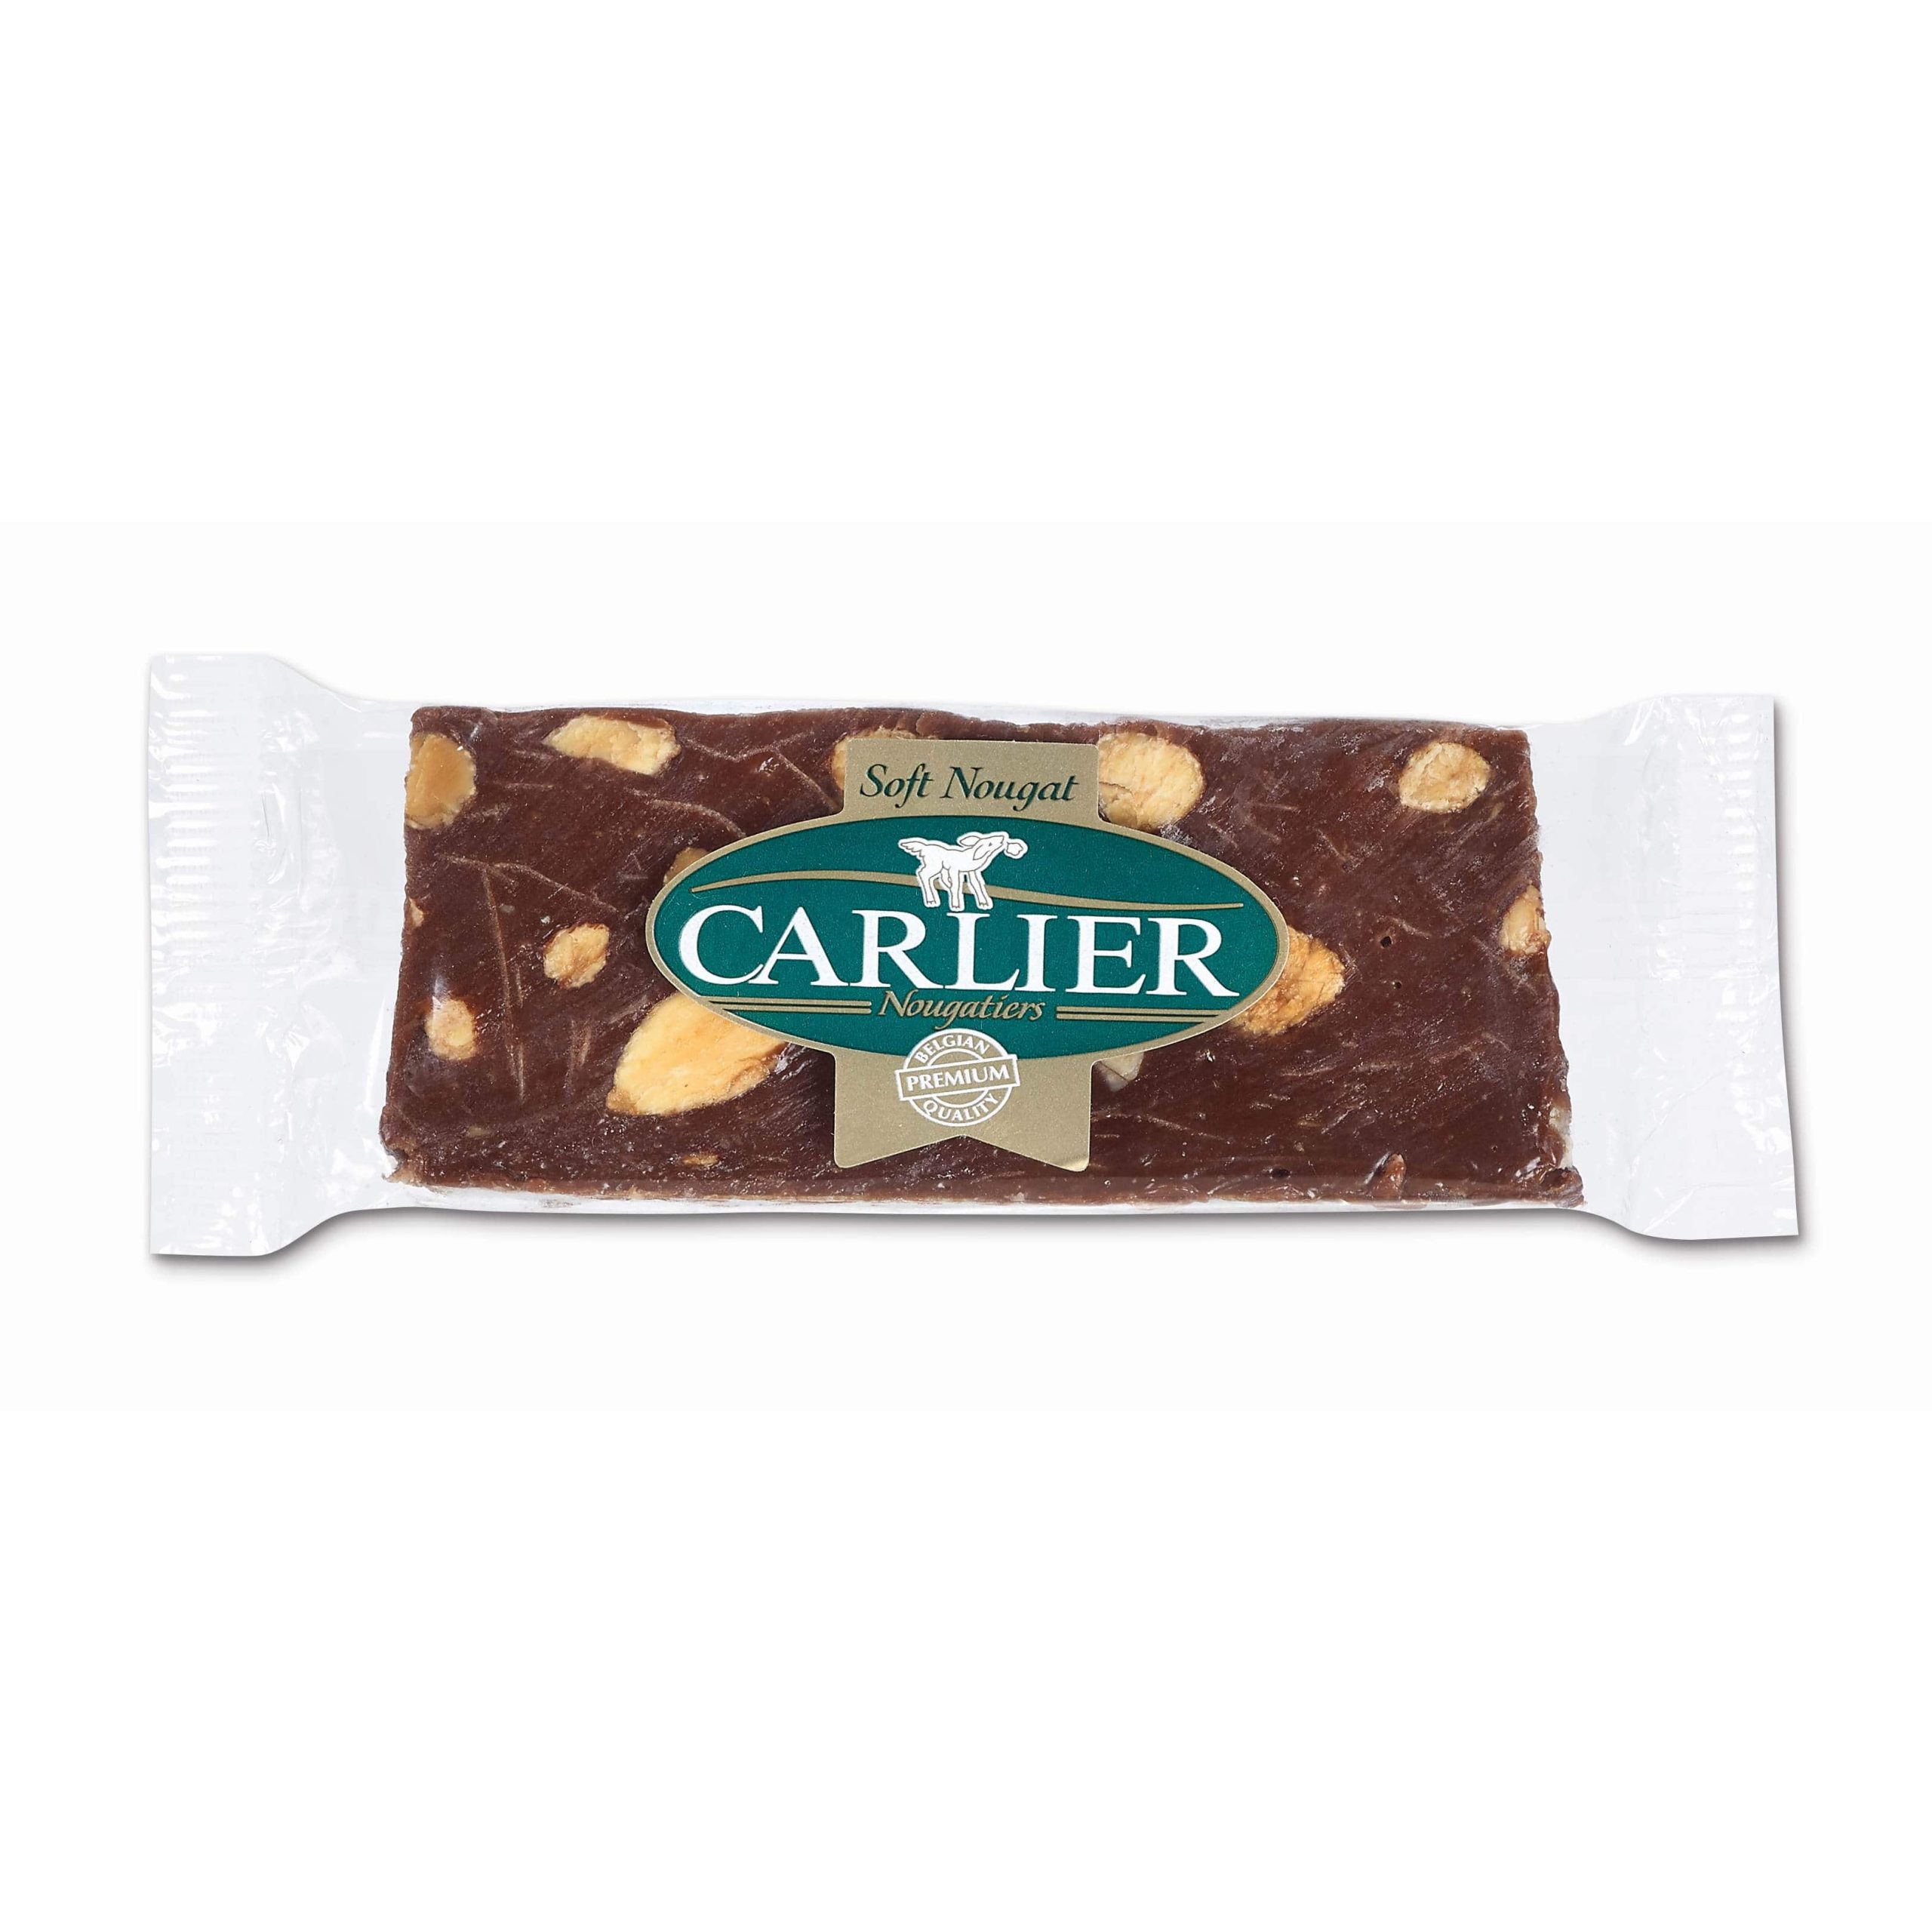 Carlier Chocolate Nougat Bar with Almonds & Fleur de Sel-min